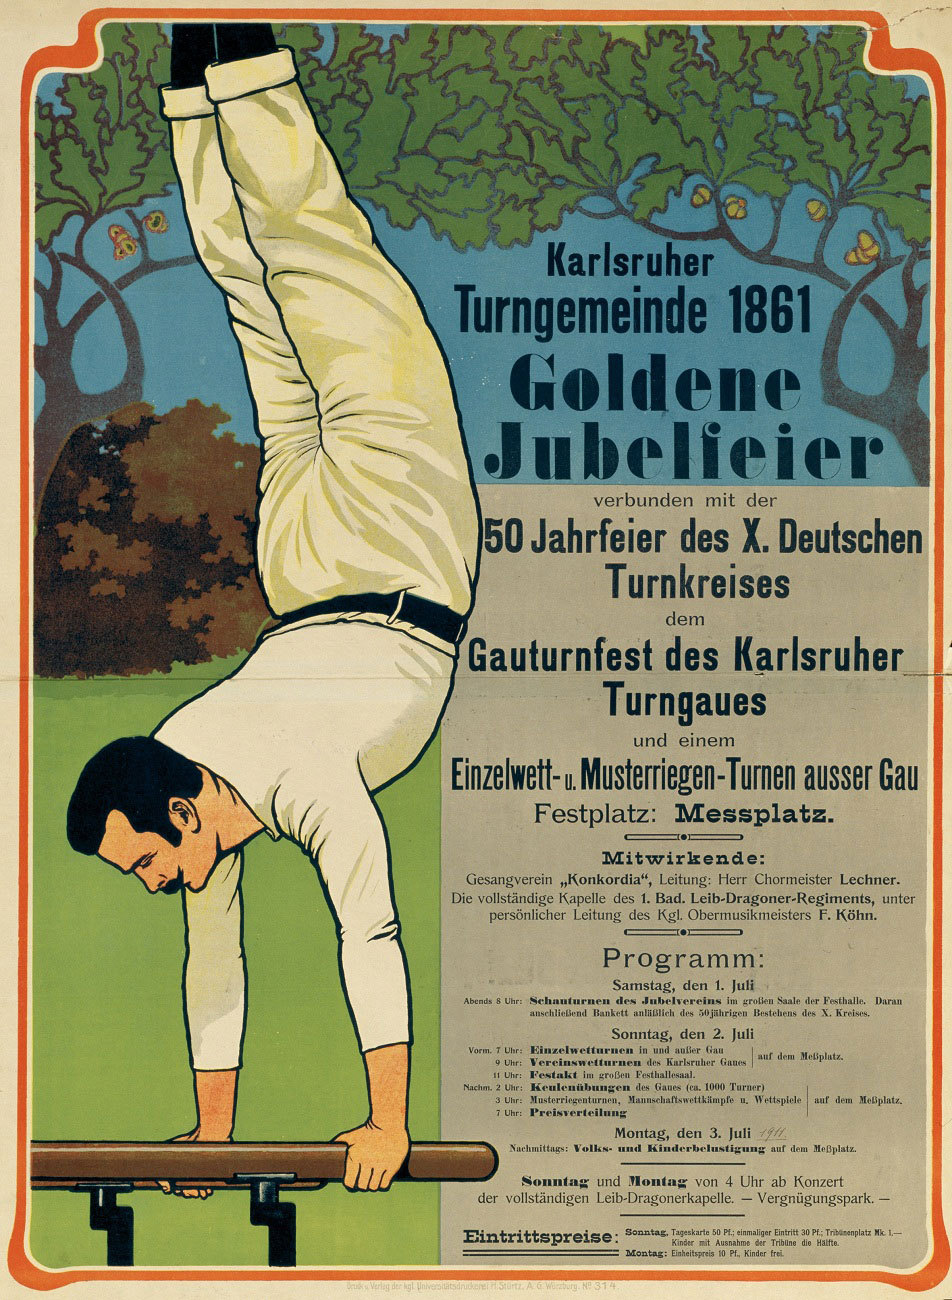 50 Jahre Karlsruher Turngemeinde, 1911